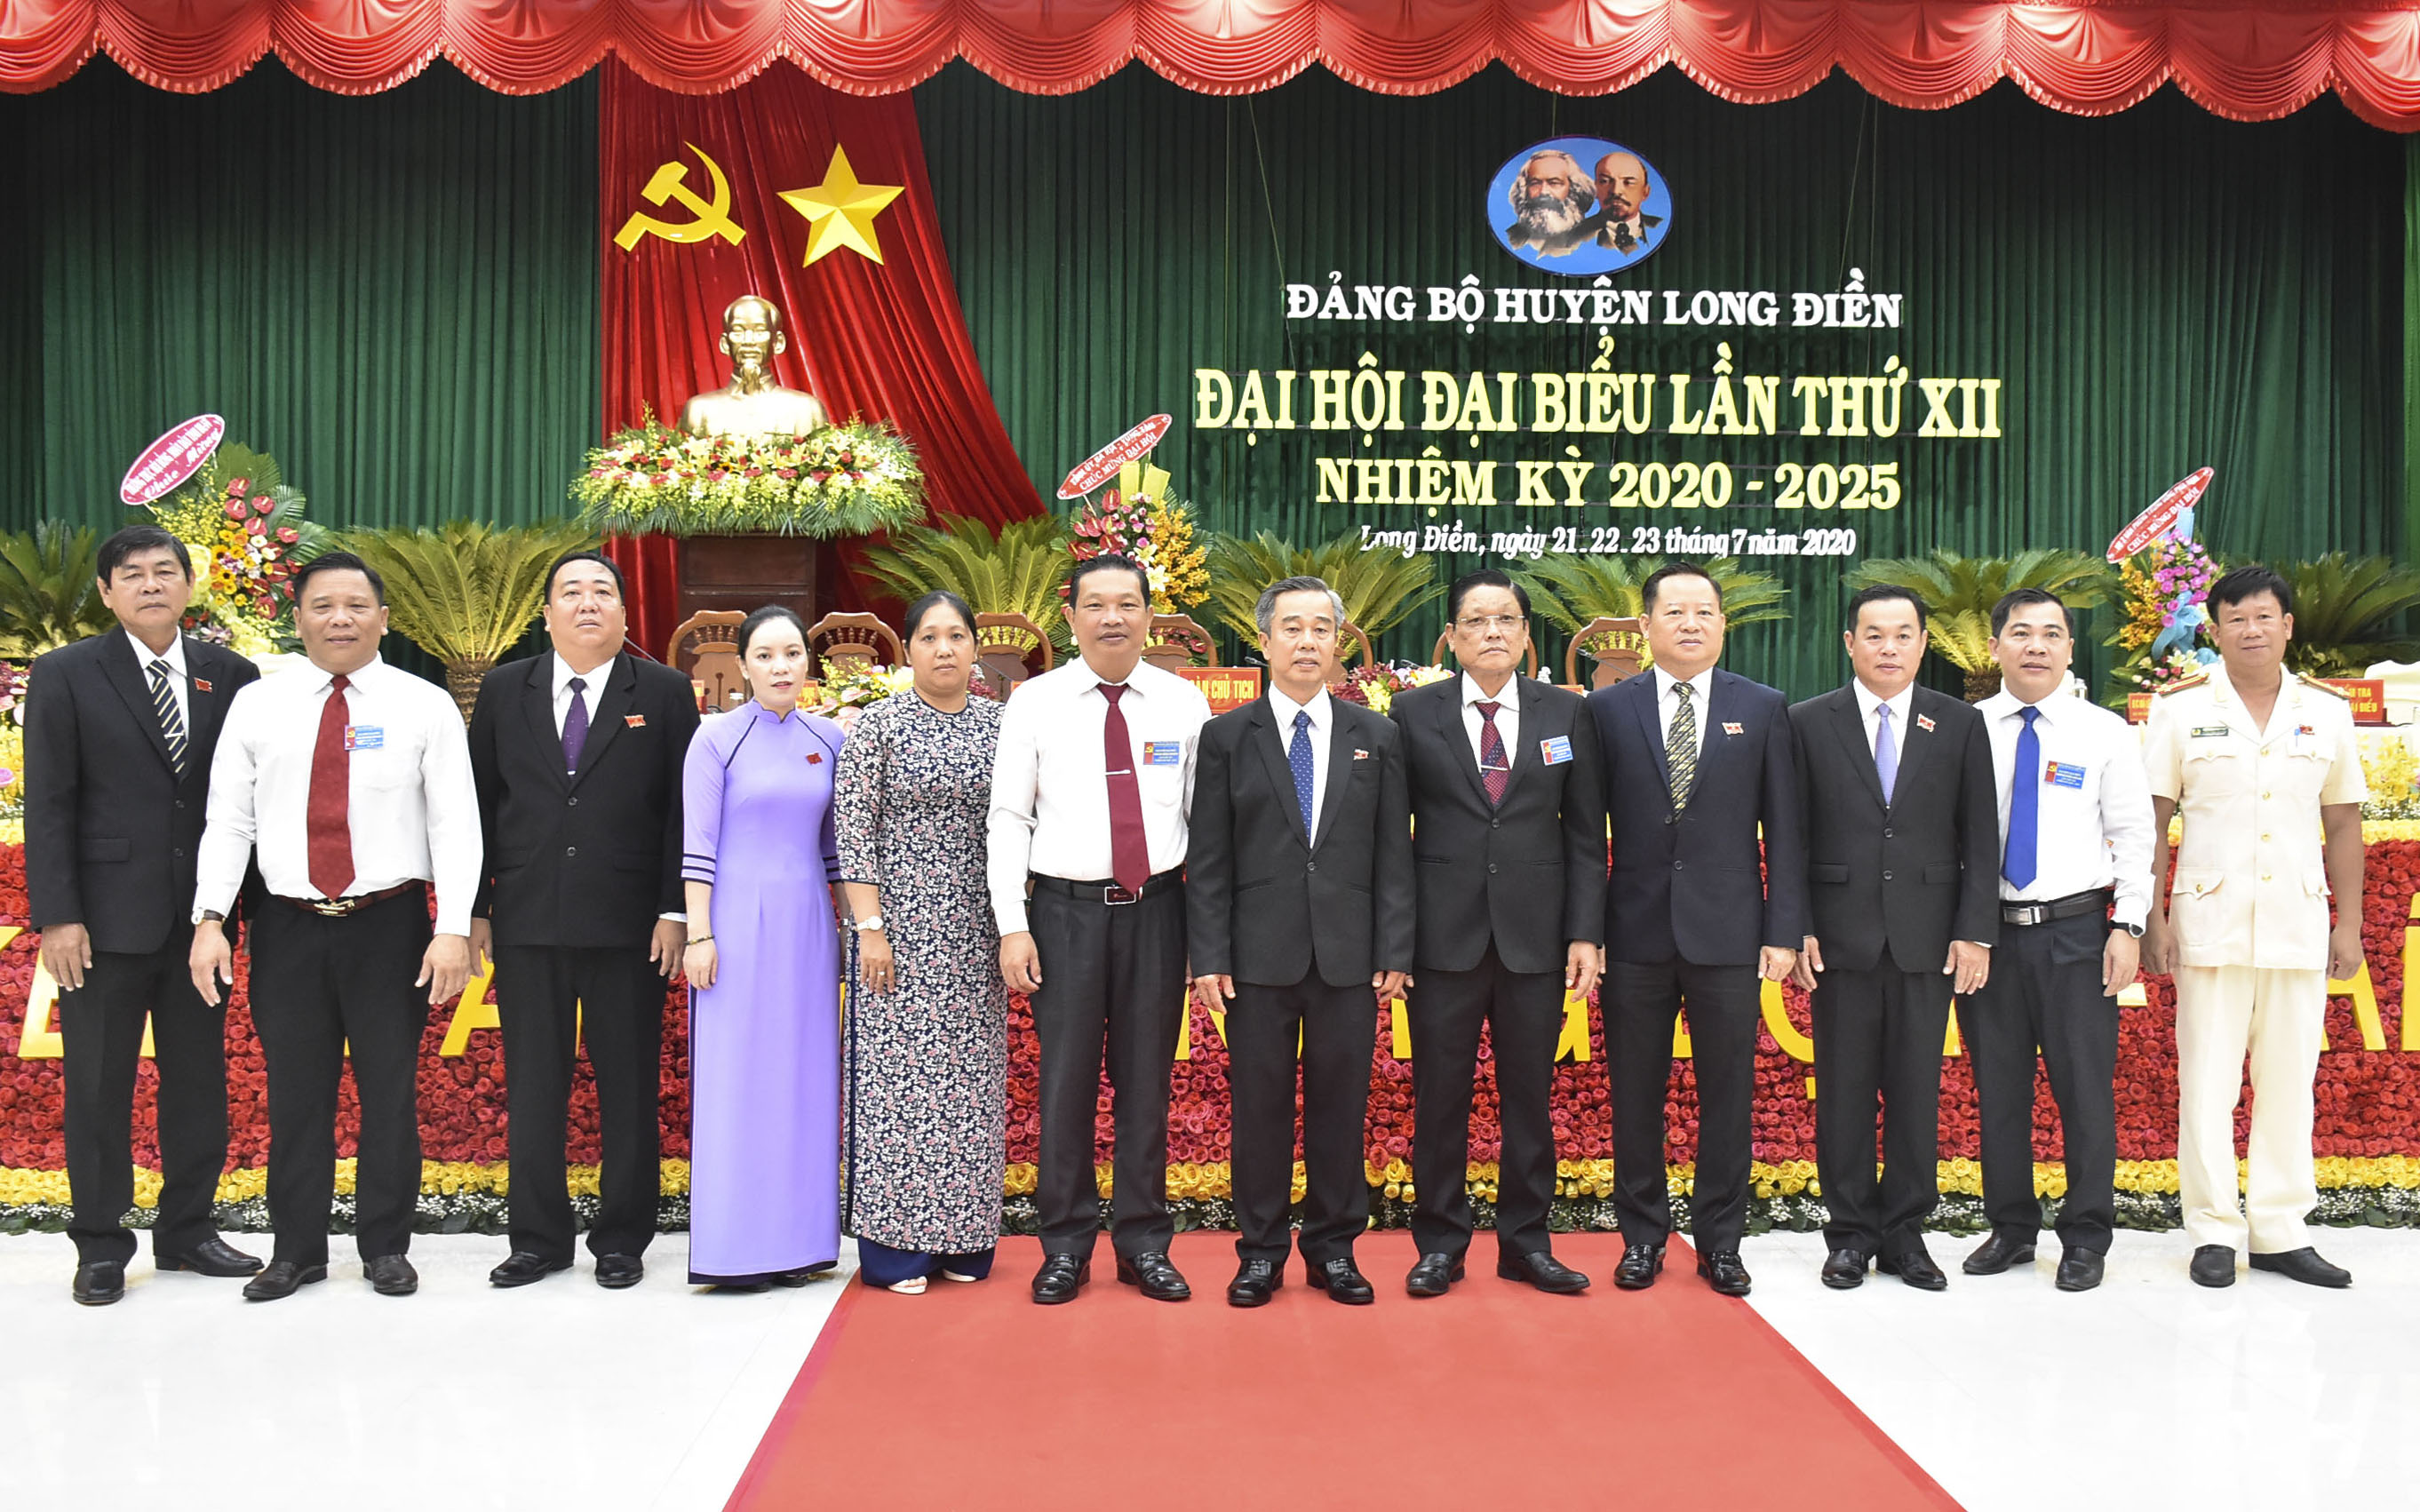 Lãnh đạo tỉnh chụp hình cùng các đồng chí trong Ban Thường vụ Huyện Long Điền nhiệm kỳ 2020-2025.